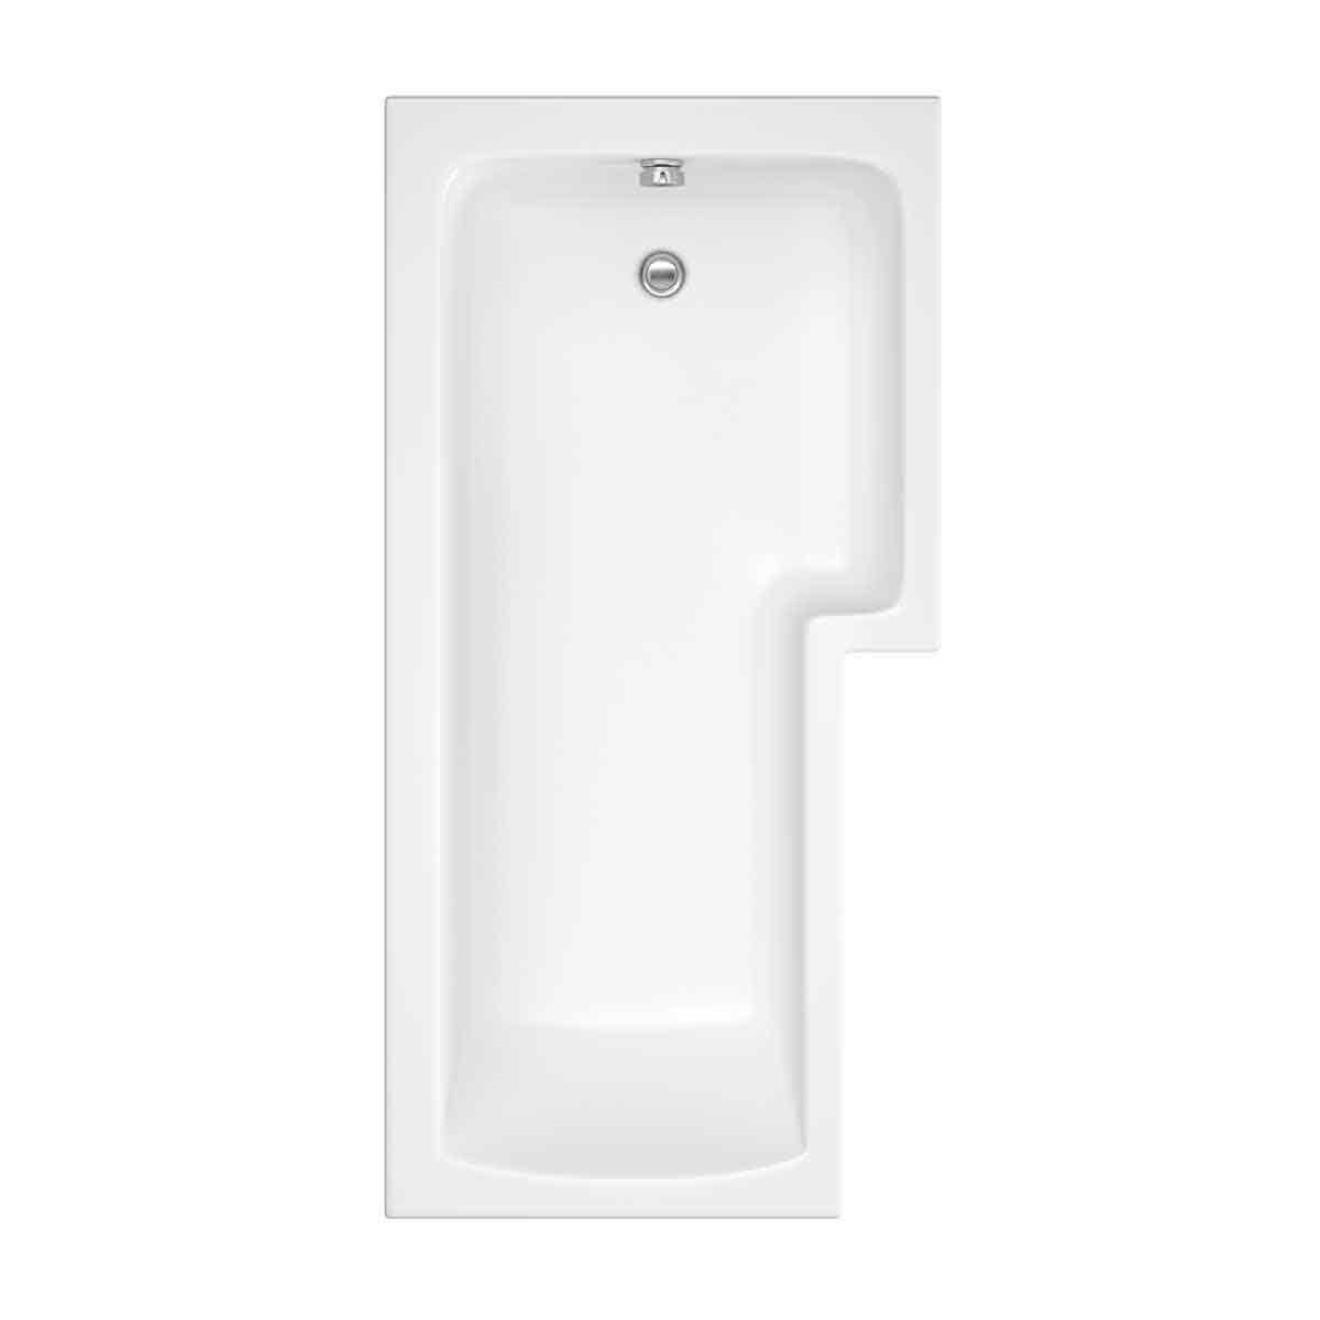 Solarna Trojancast L Shape Shower Bath 1500 x 850 x 700mm Right Hand